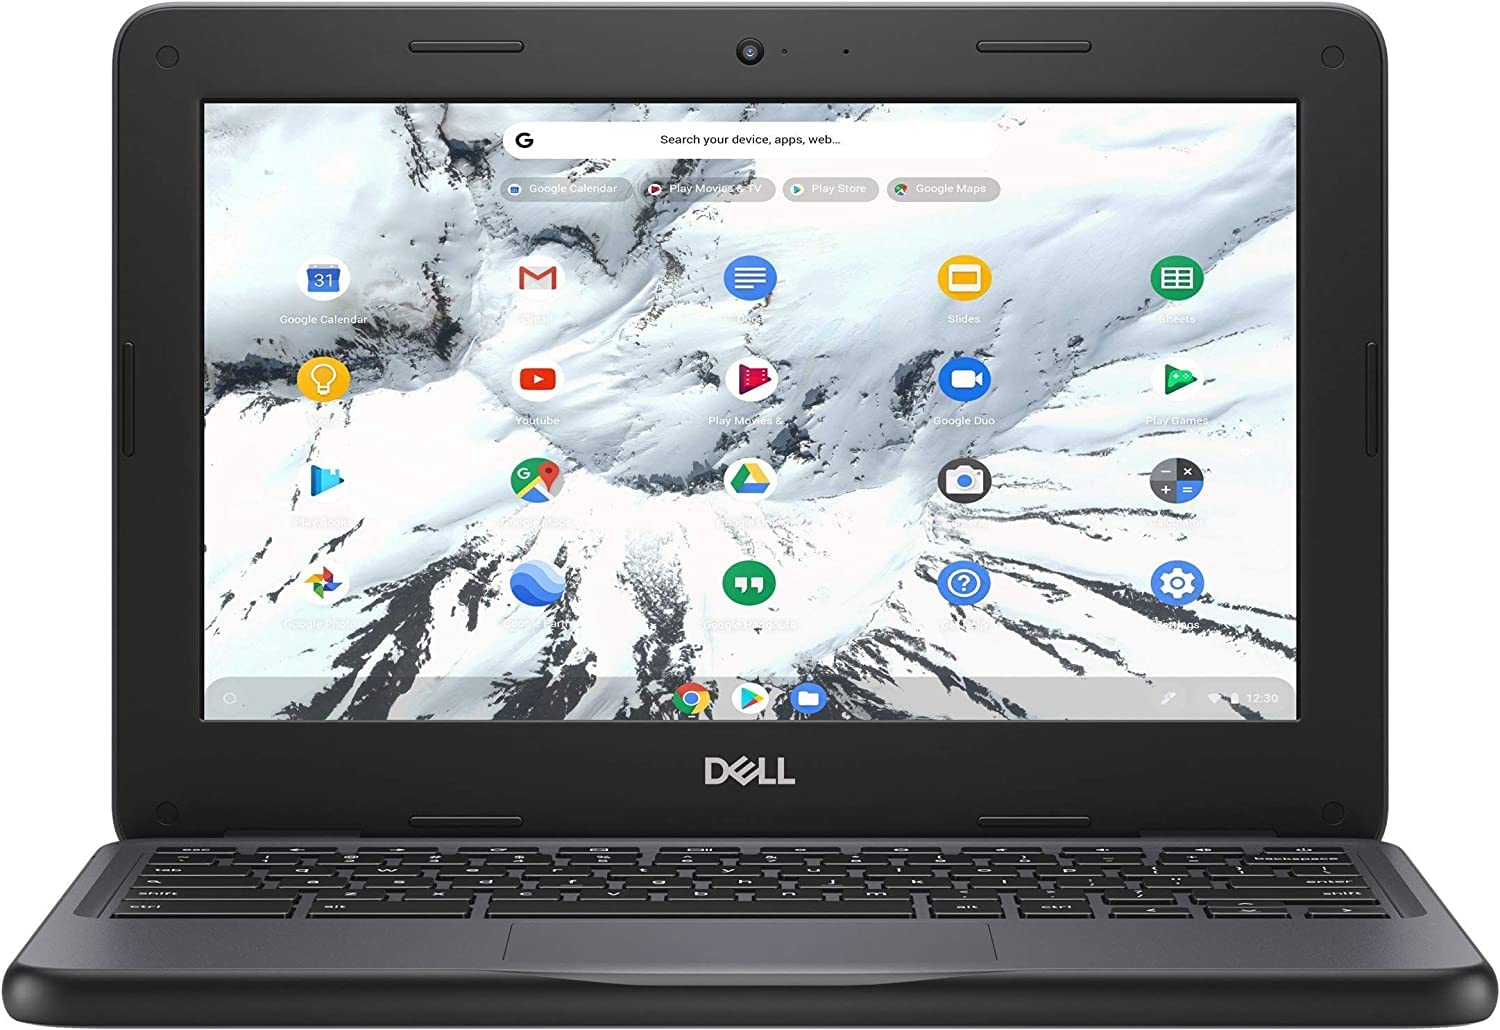 Dell Chromebook 11 3100 2-in-1 Celeron N4000 1.1GHz 4GB 32GB eMMC 11.6" HD Chrome OS (Renewed)